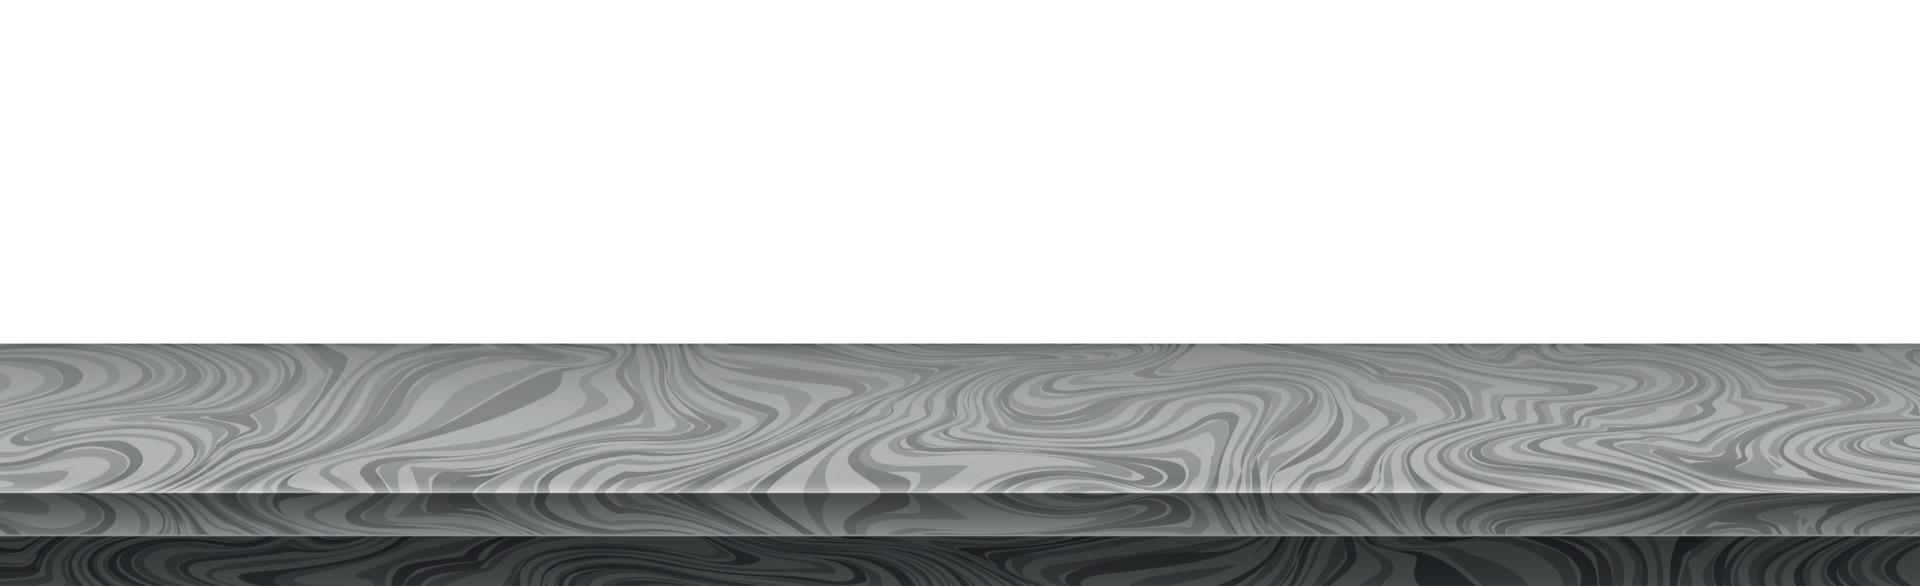 realistisch grijs stenen tafelblad, achtergrond voor presentatie - vector